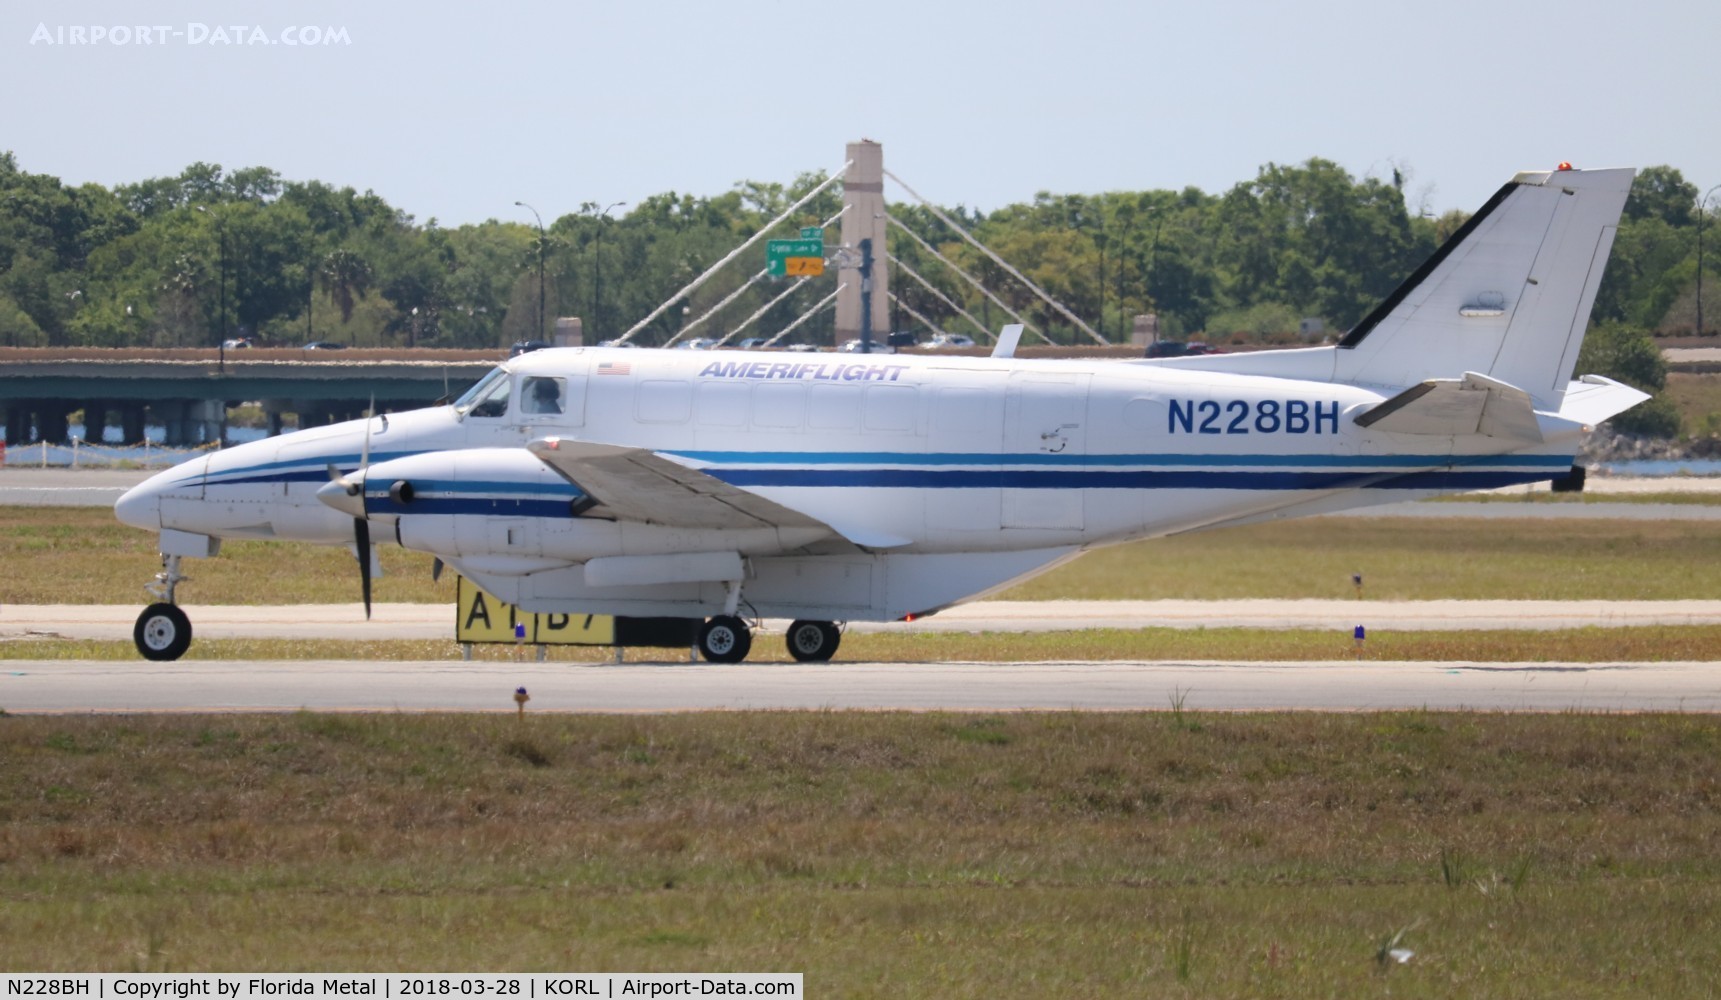 N228BH, 1986 Beech C99 Airliner C/N U-229, Ameriflight